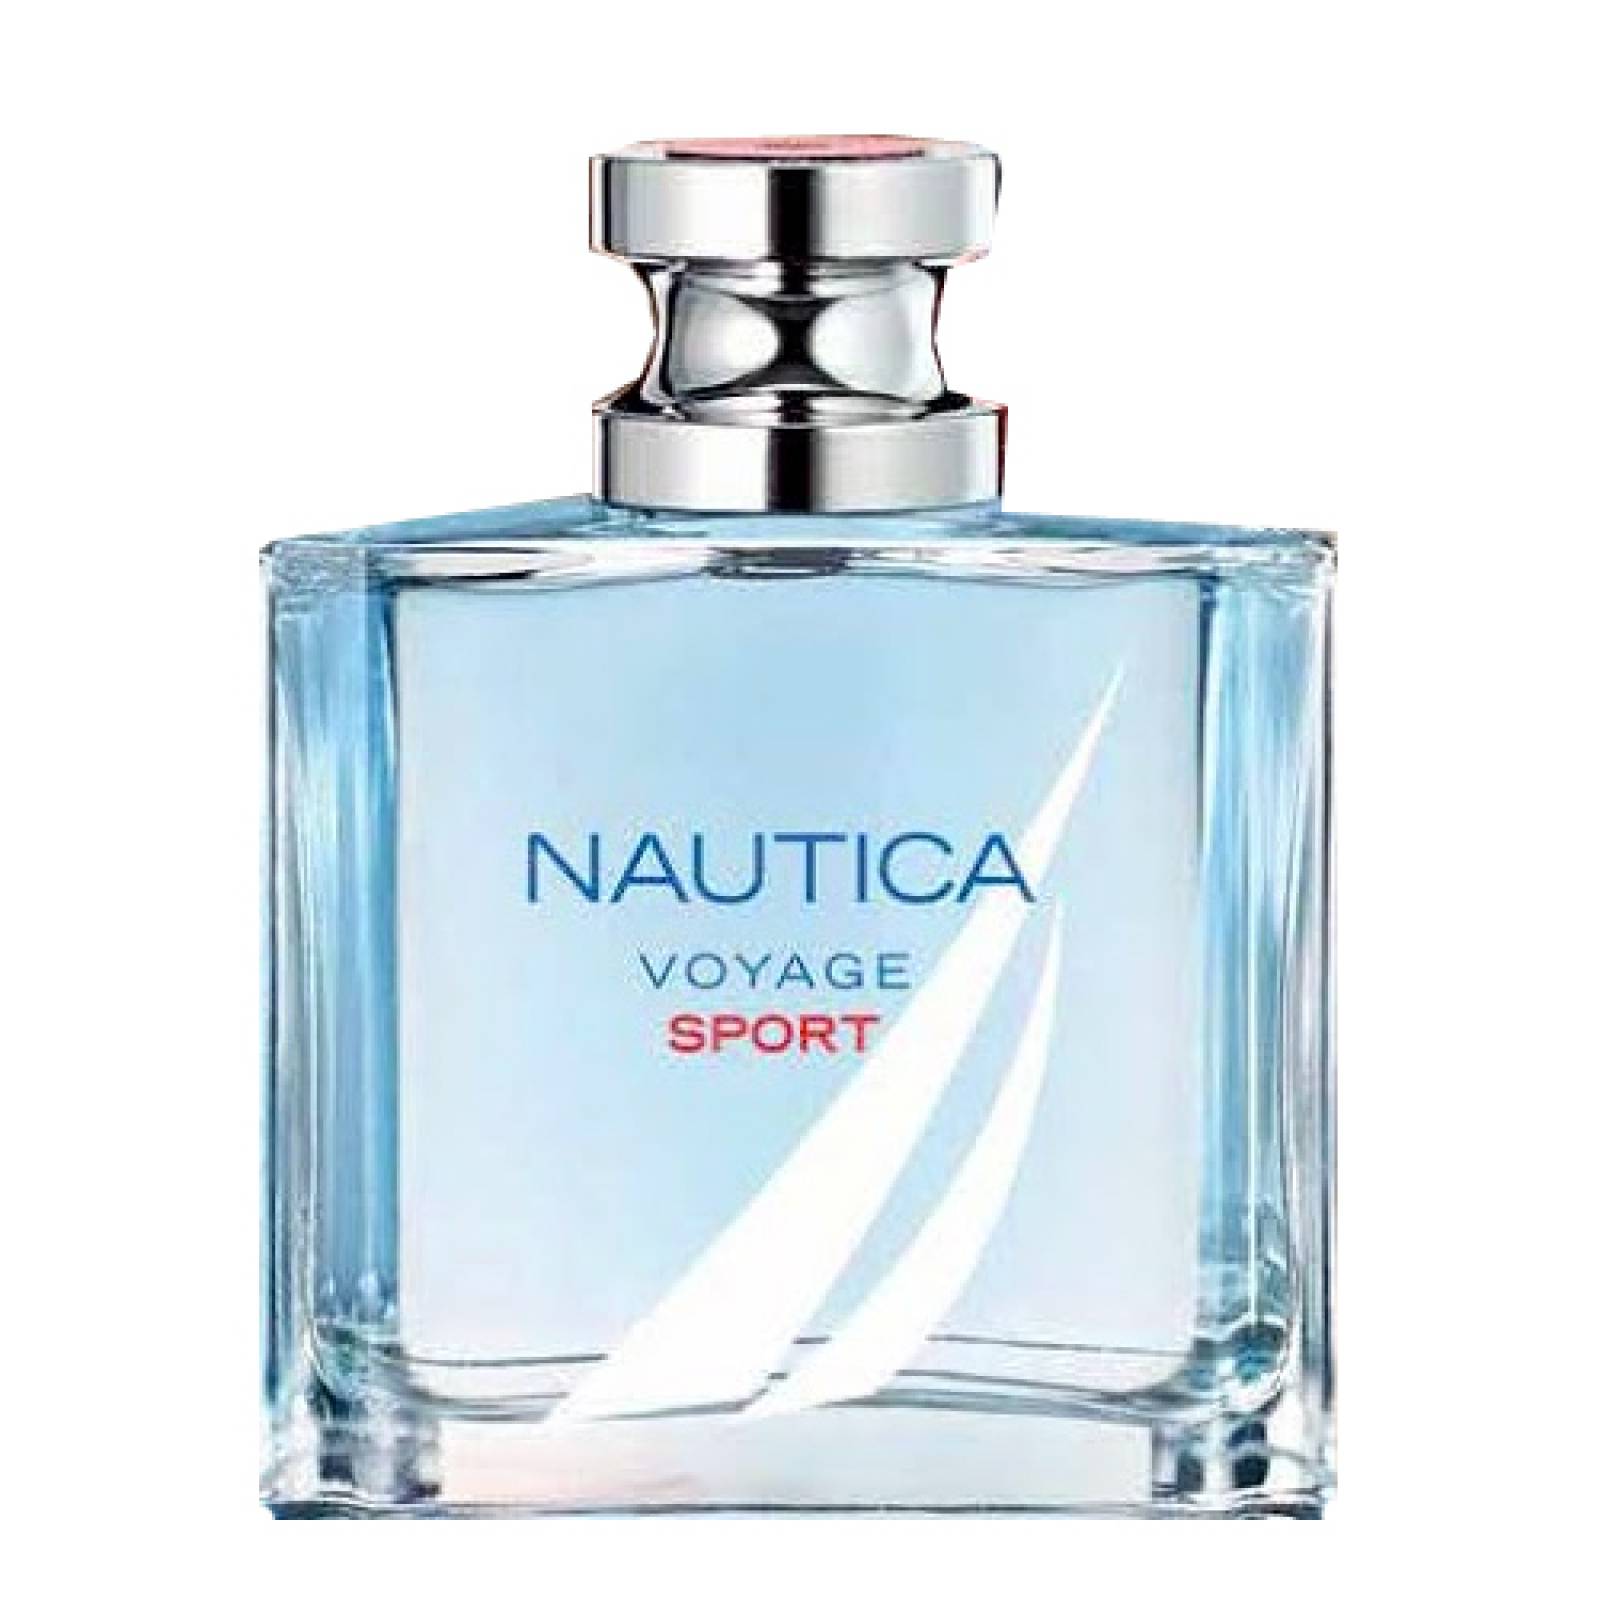 nautica voyage or voyage sport